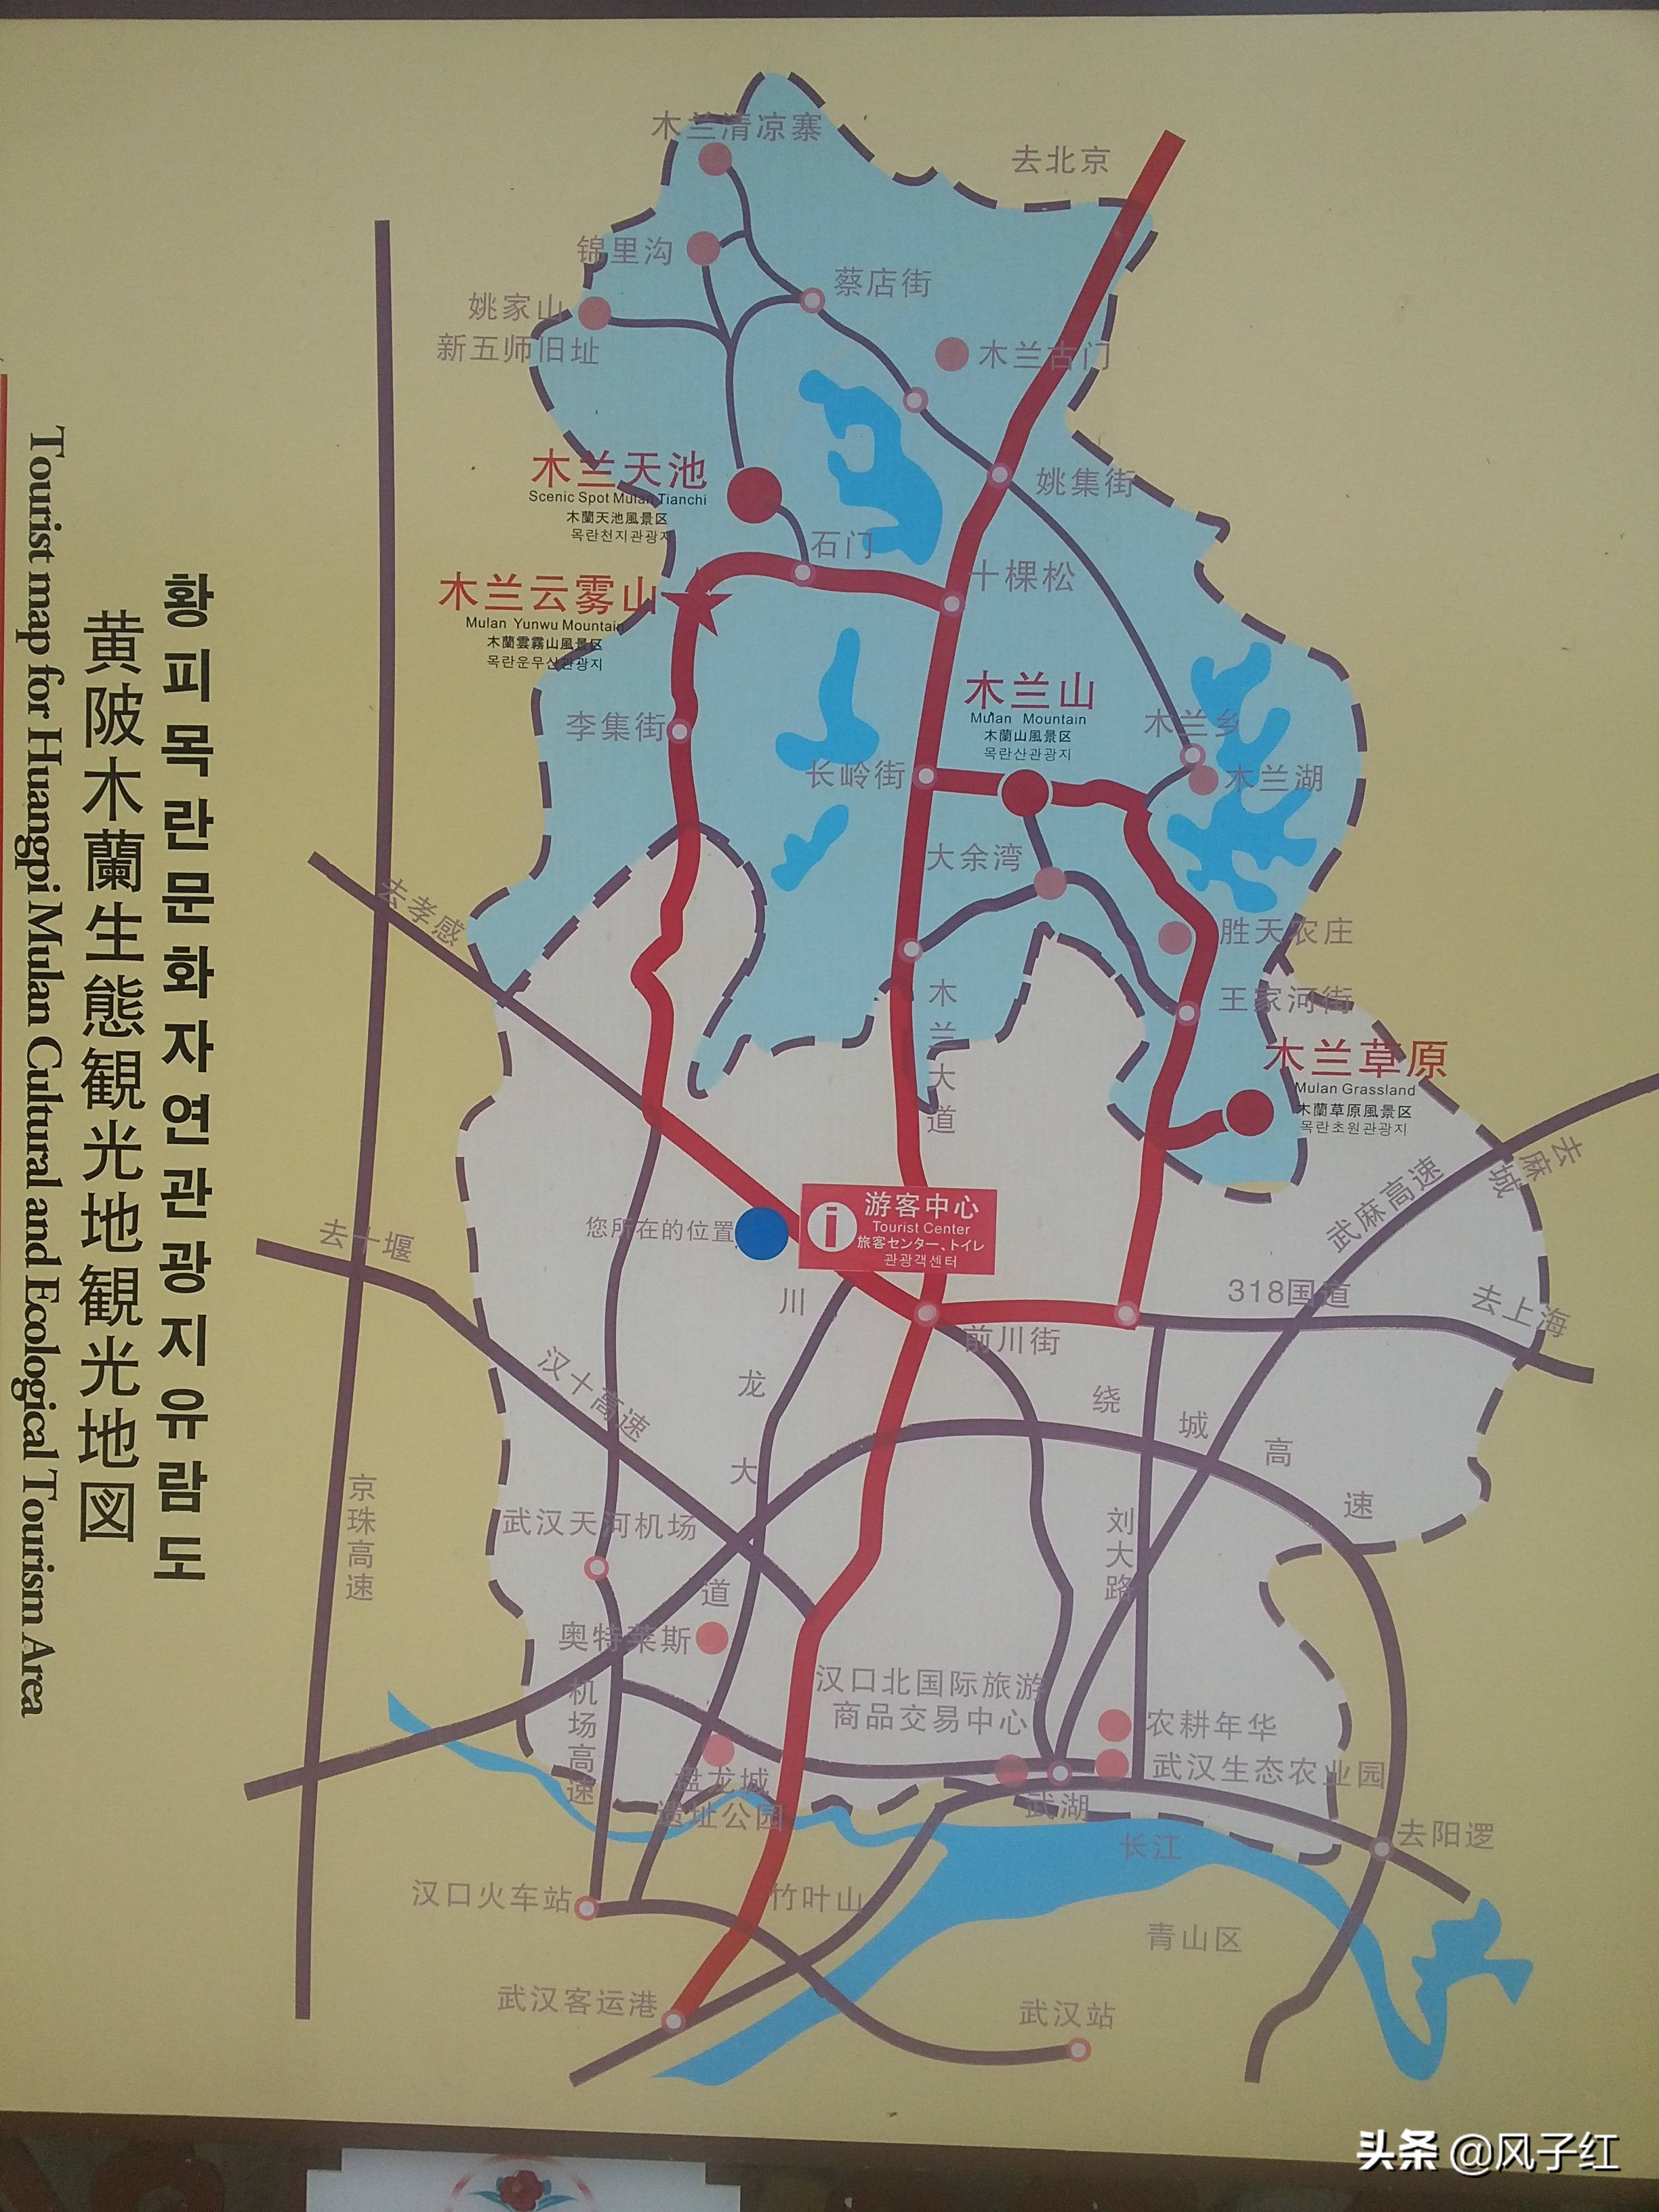 武汉黄陂最经典的3条自驾线路，精简攻略 地图版，赶快收藏备用吧